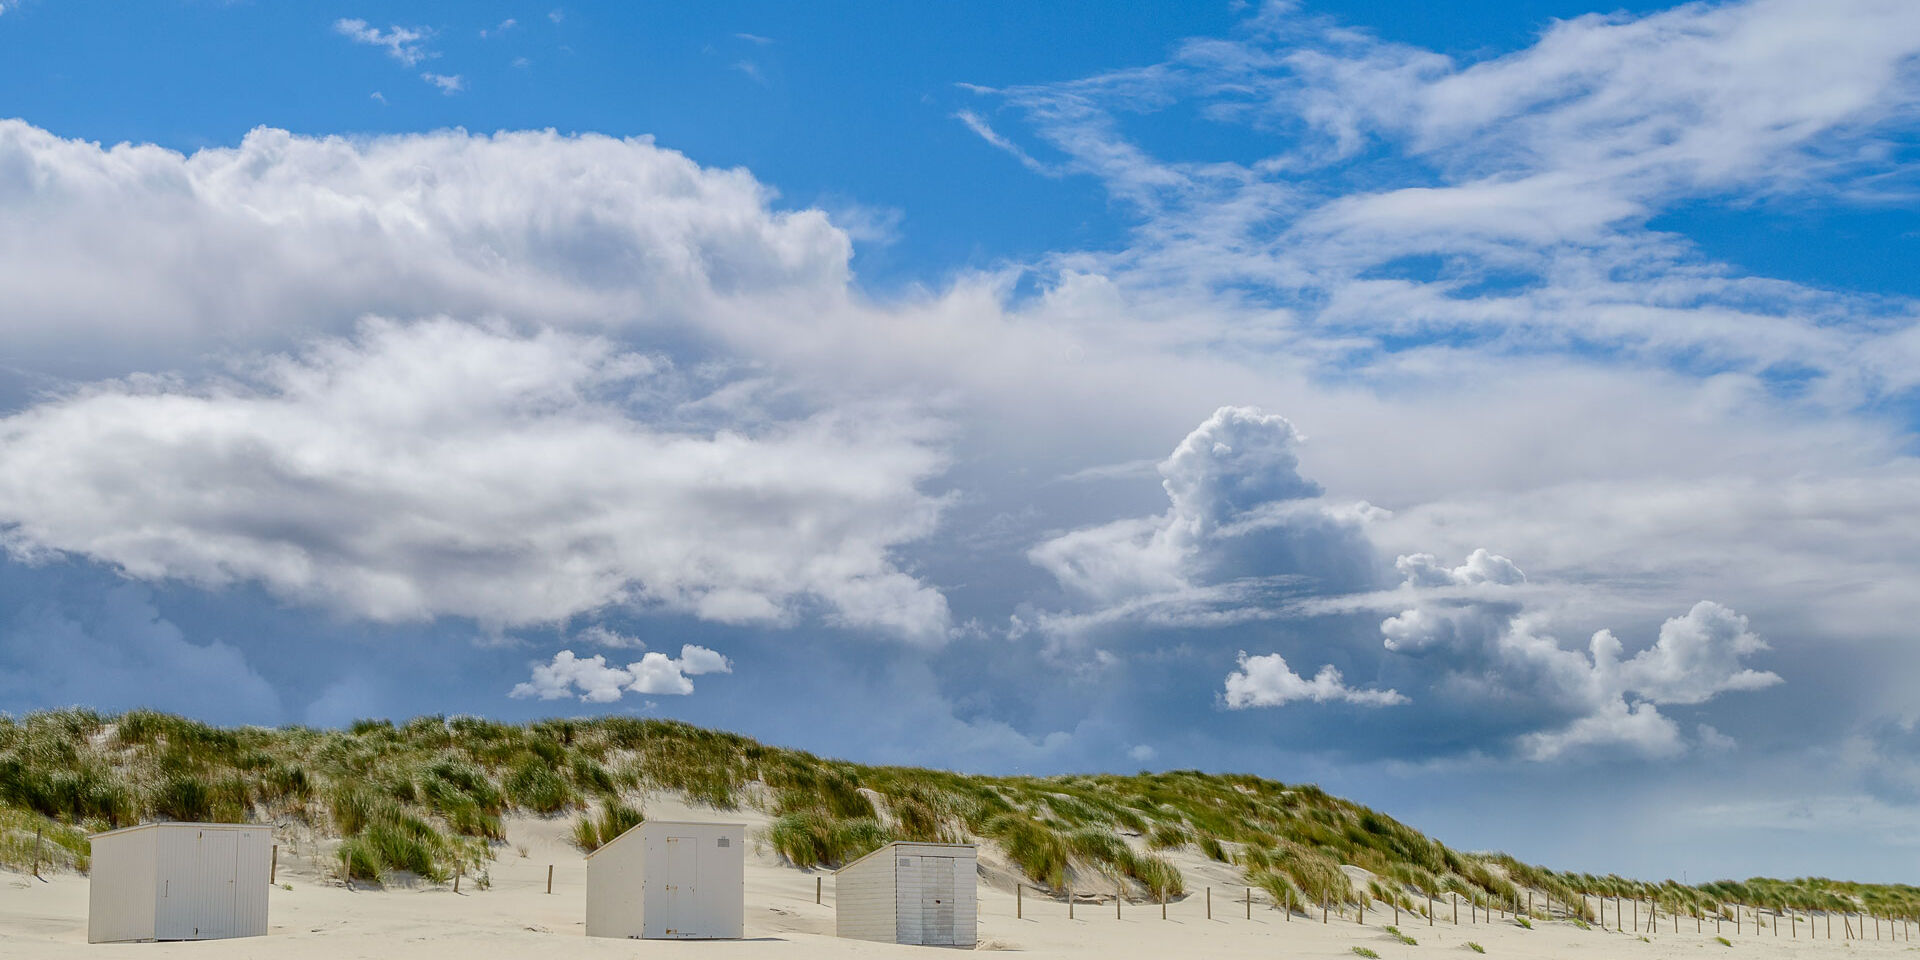 Witte strandhuisjes op het witte zand van het strand in het Westland met op de achtergrond groen begroeide duinen met een blauwe lucht en witte wolken in de zomer